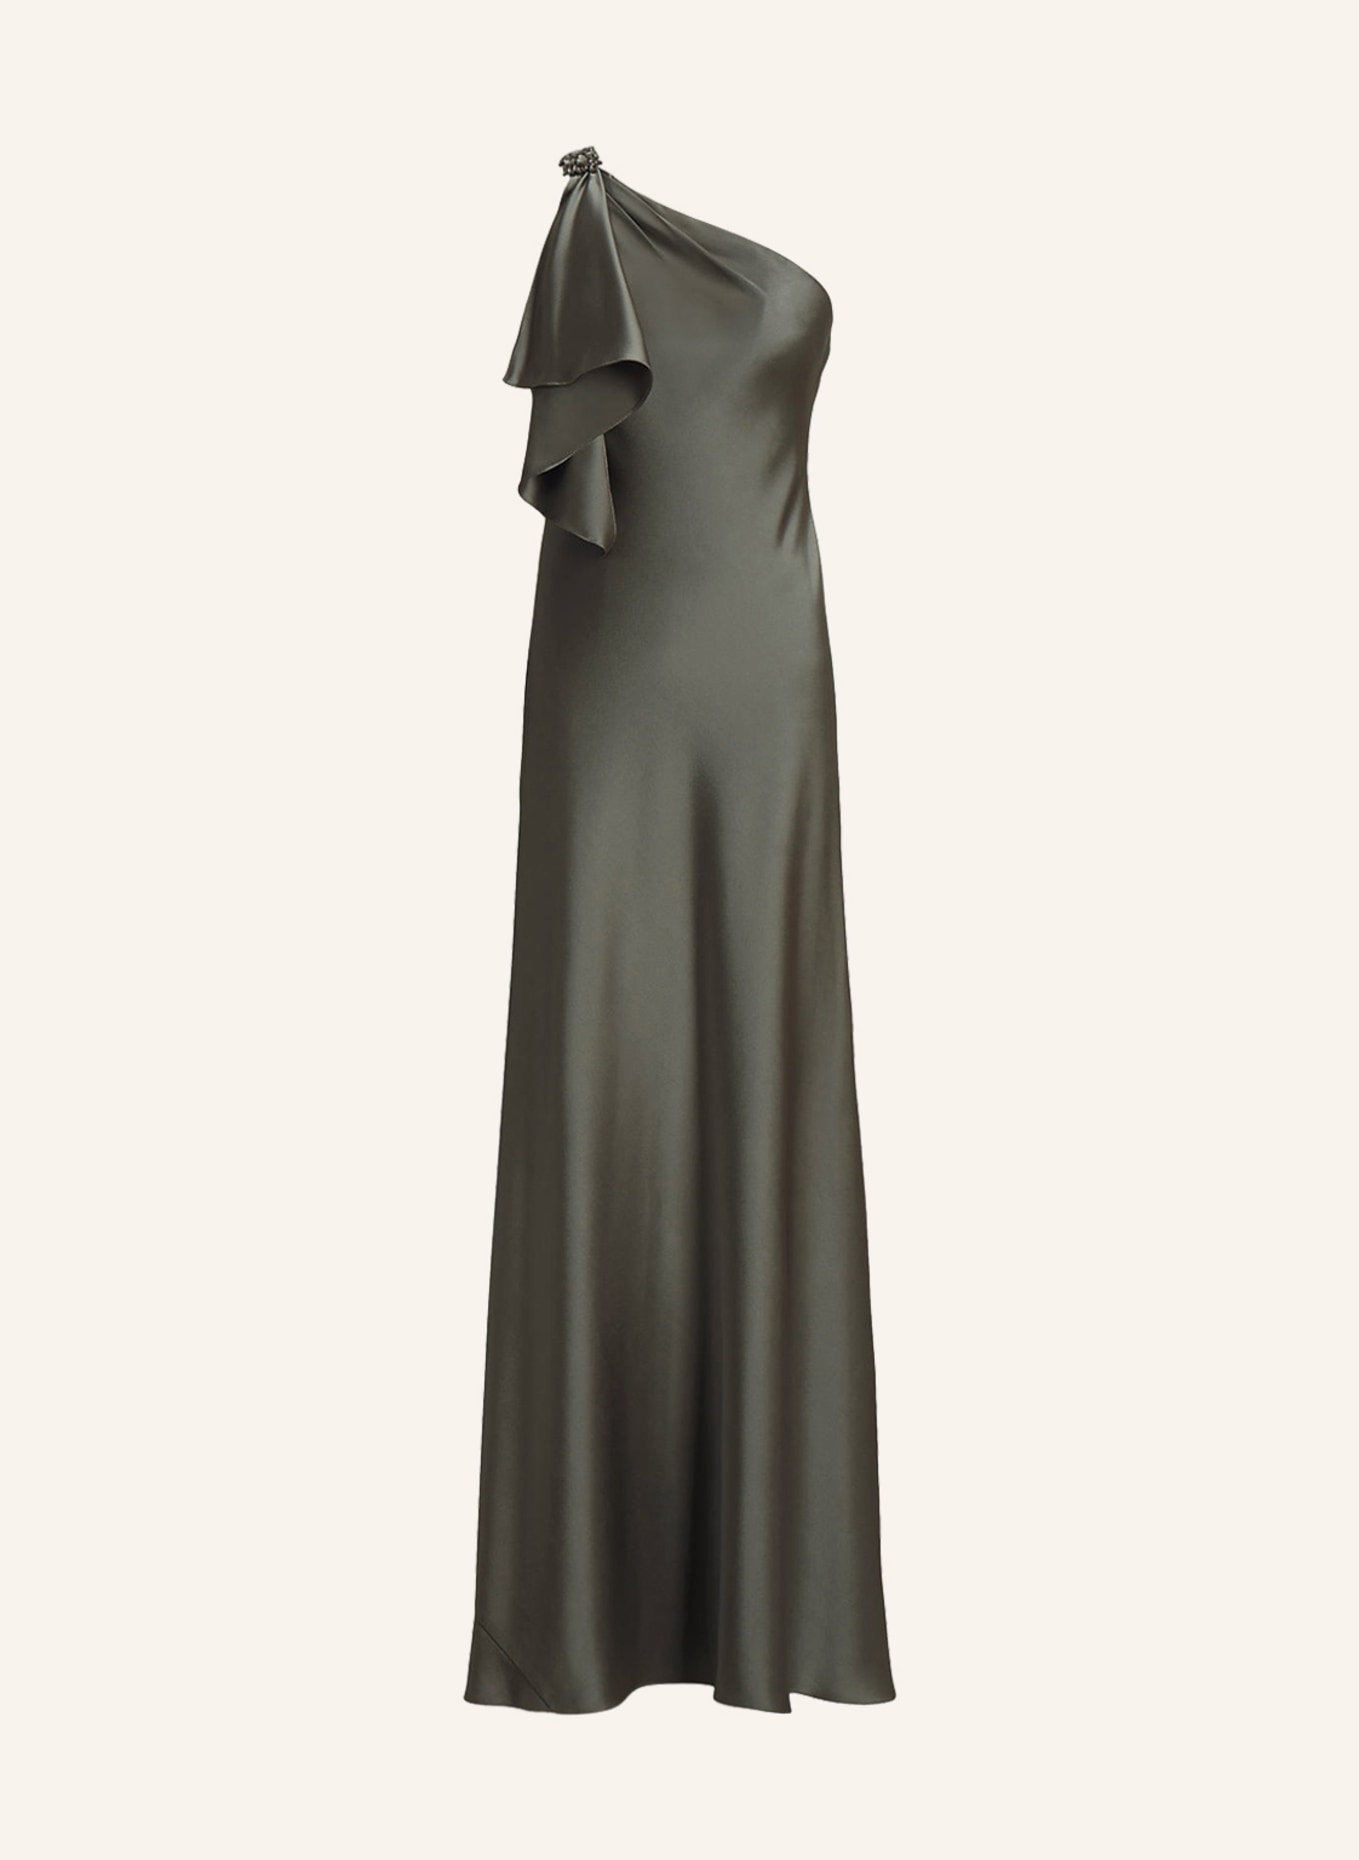 LAUREN RALPH LAUREN Evening dress ELZIRA in satin, Color: GRAY (Image 1)